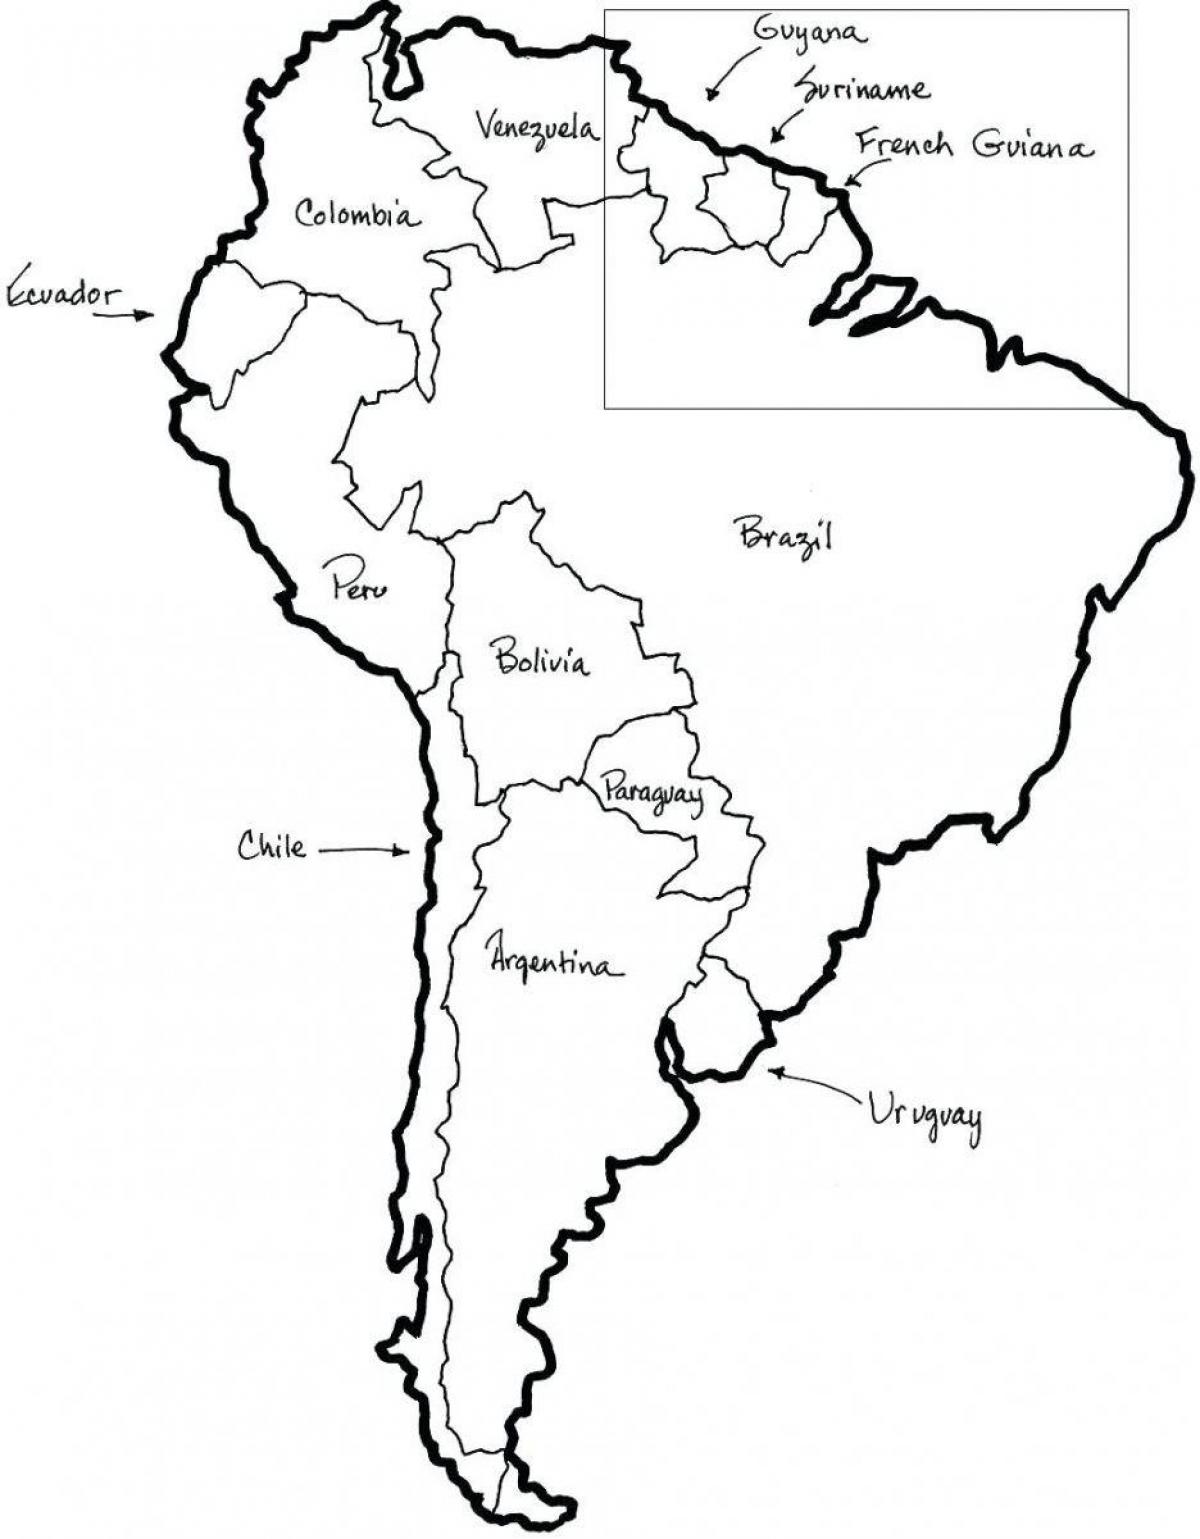 Peta dari Chile menjabarkan komponen